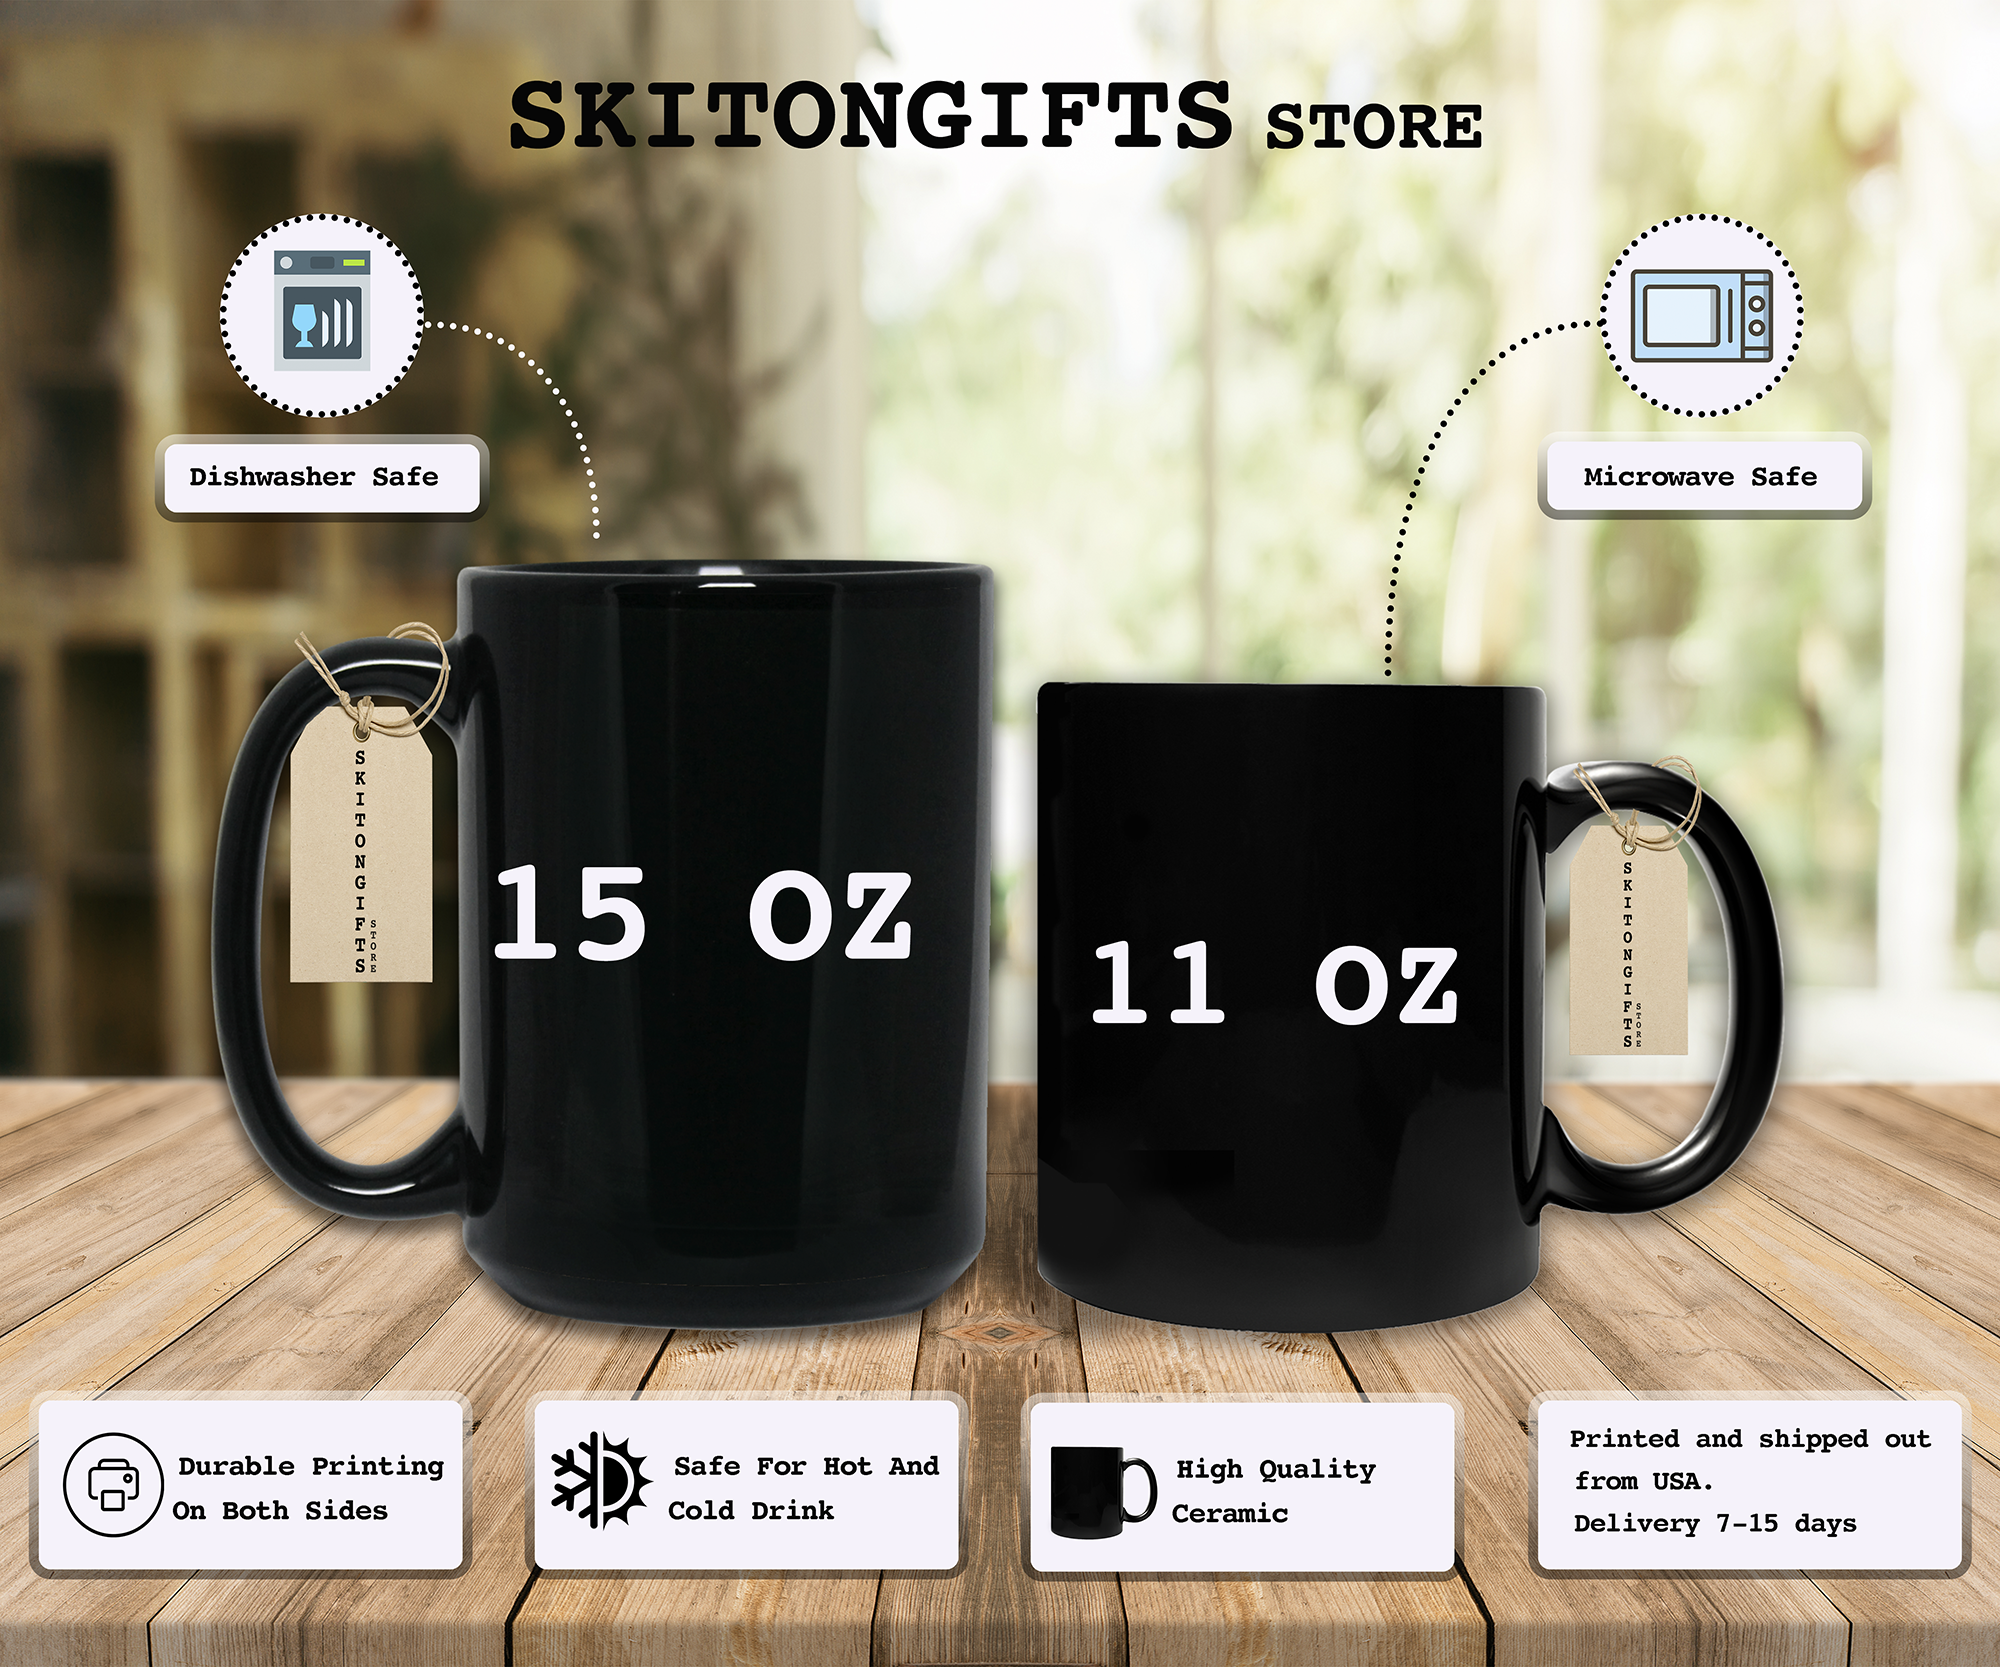 Skitongifts Funny Ceramic Novelty Coffee Mug You Can Just Supercalifragilistic Kissmyassdocious ve60Rtg